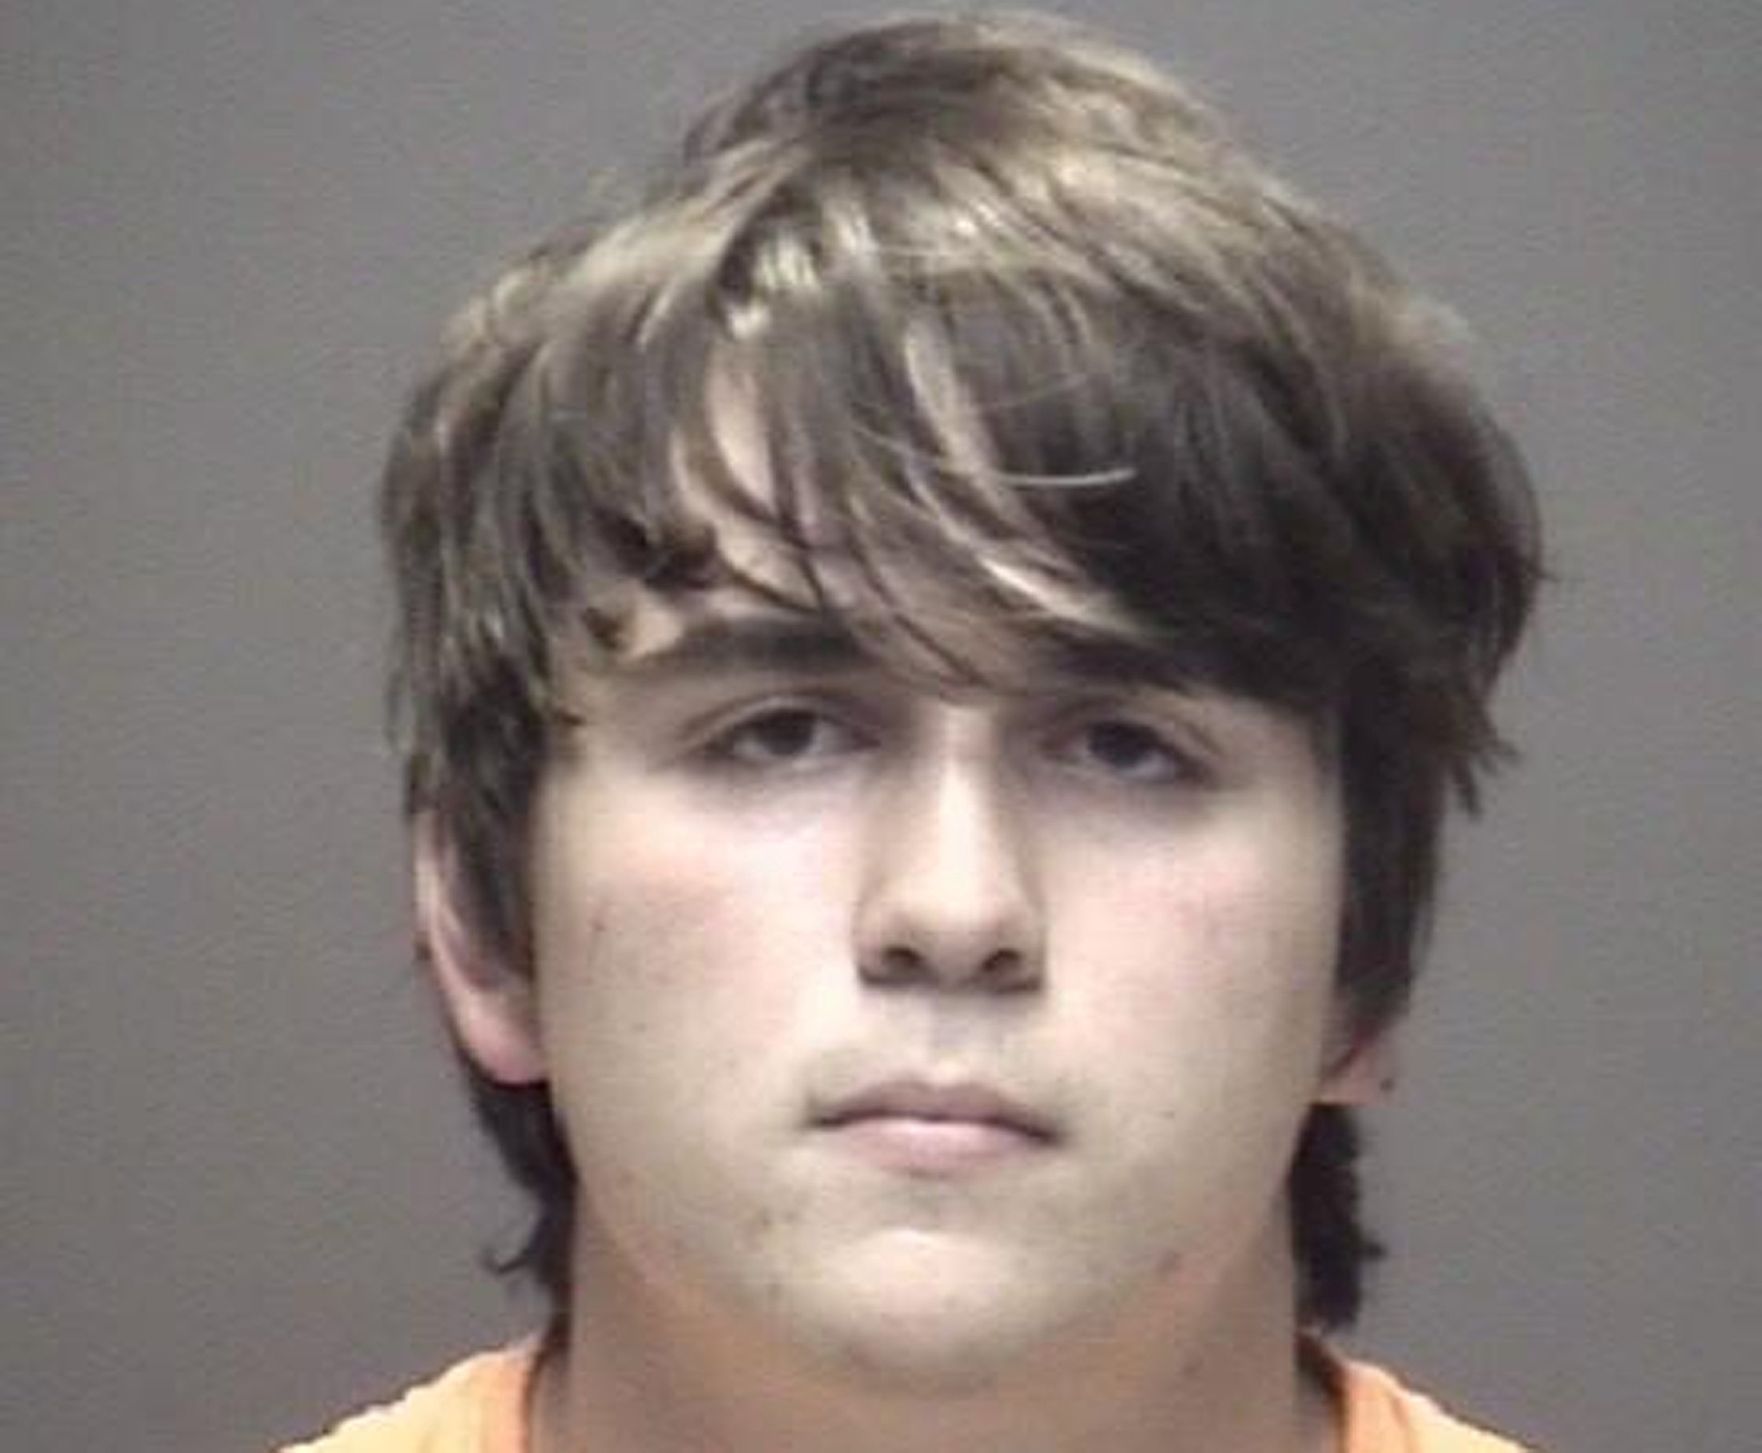 Dimitrios Pagourtzis, 17letý student postřílel 10 lidí na střední škole v americkém Texasu.